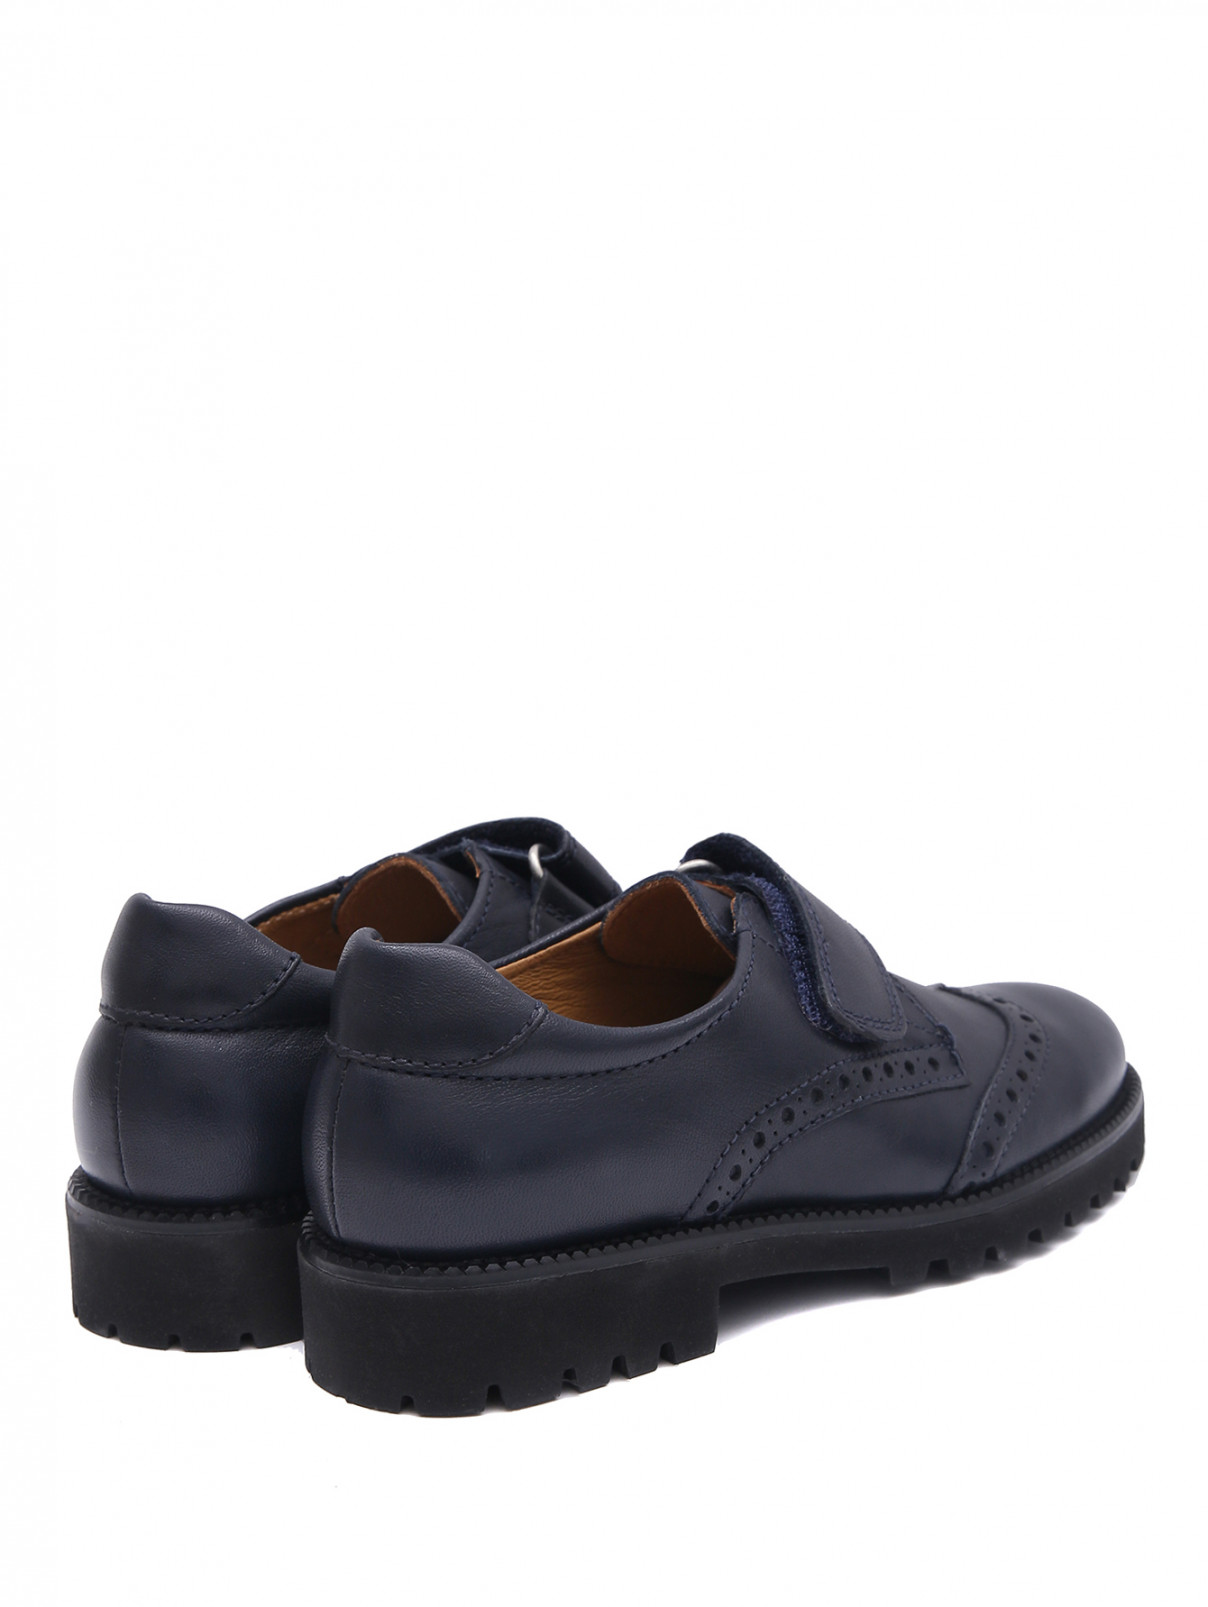 Кожаные туфли на липучке Beberlis  –  Обтравка2  – Цвет:  Синий